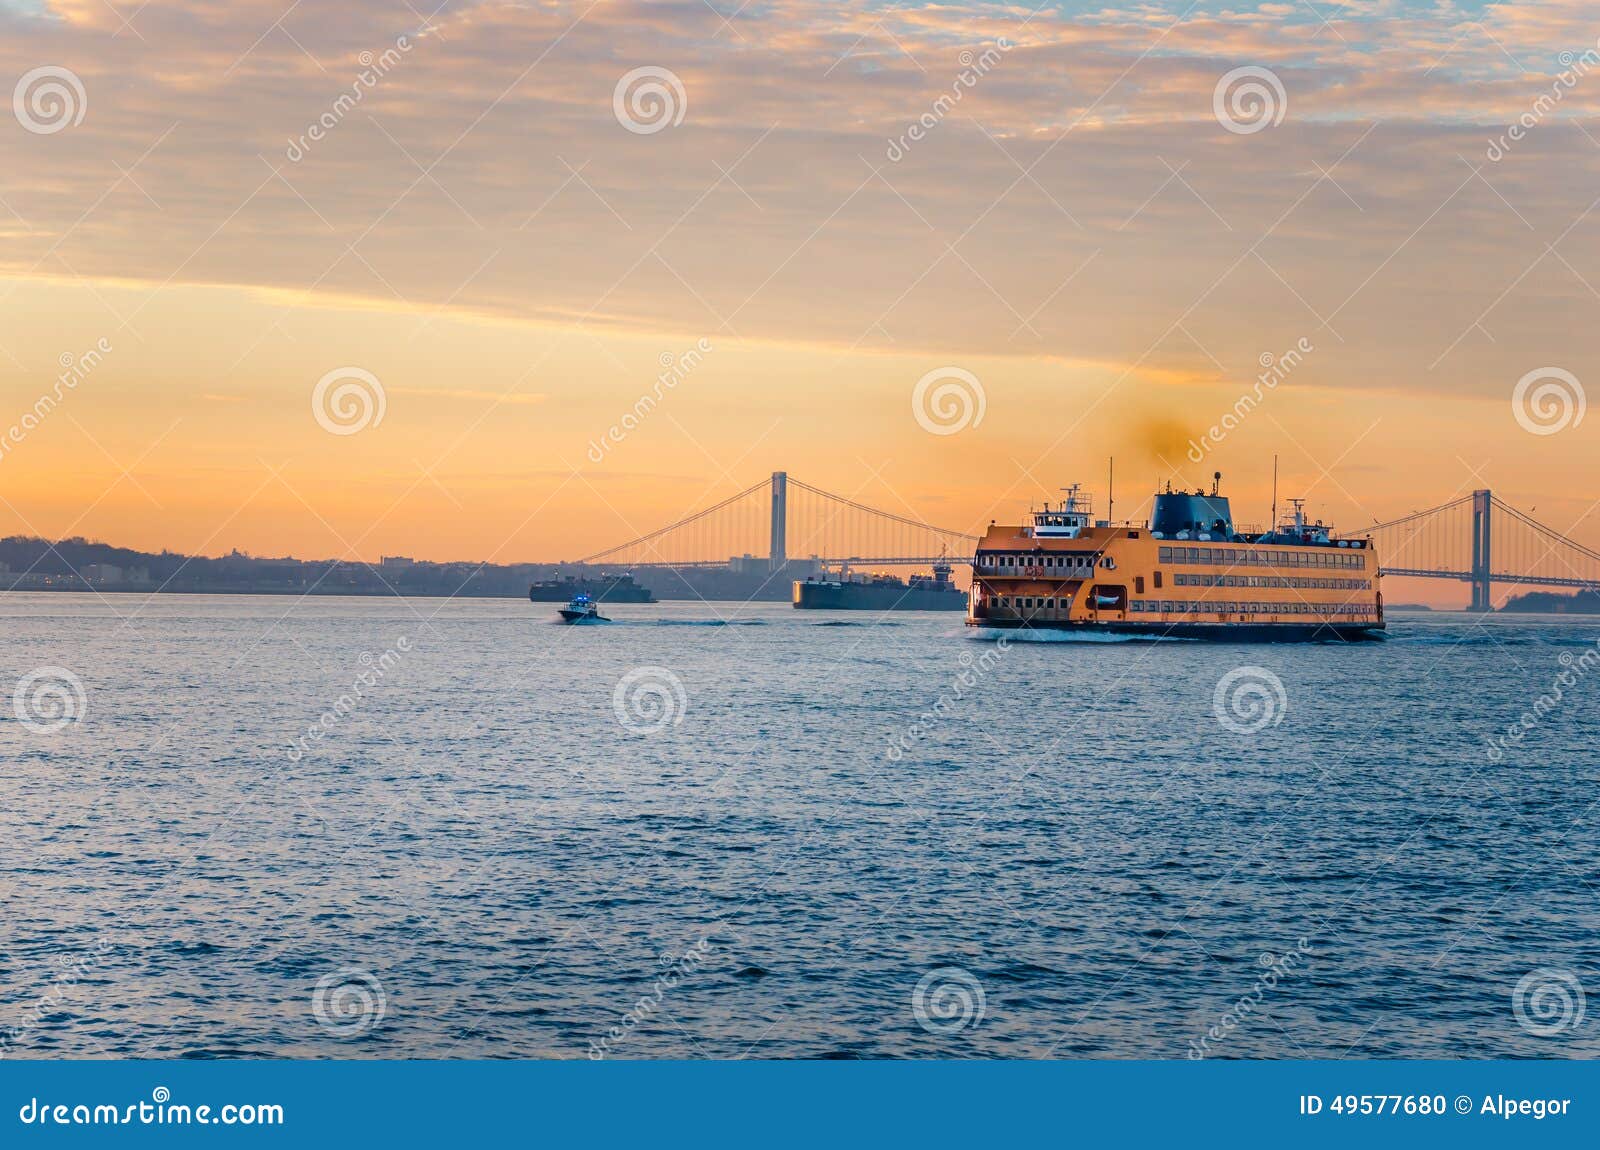 staten island ferry at dawn